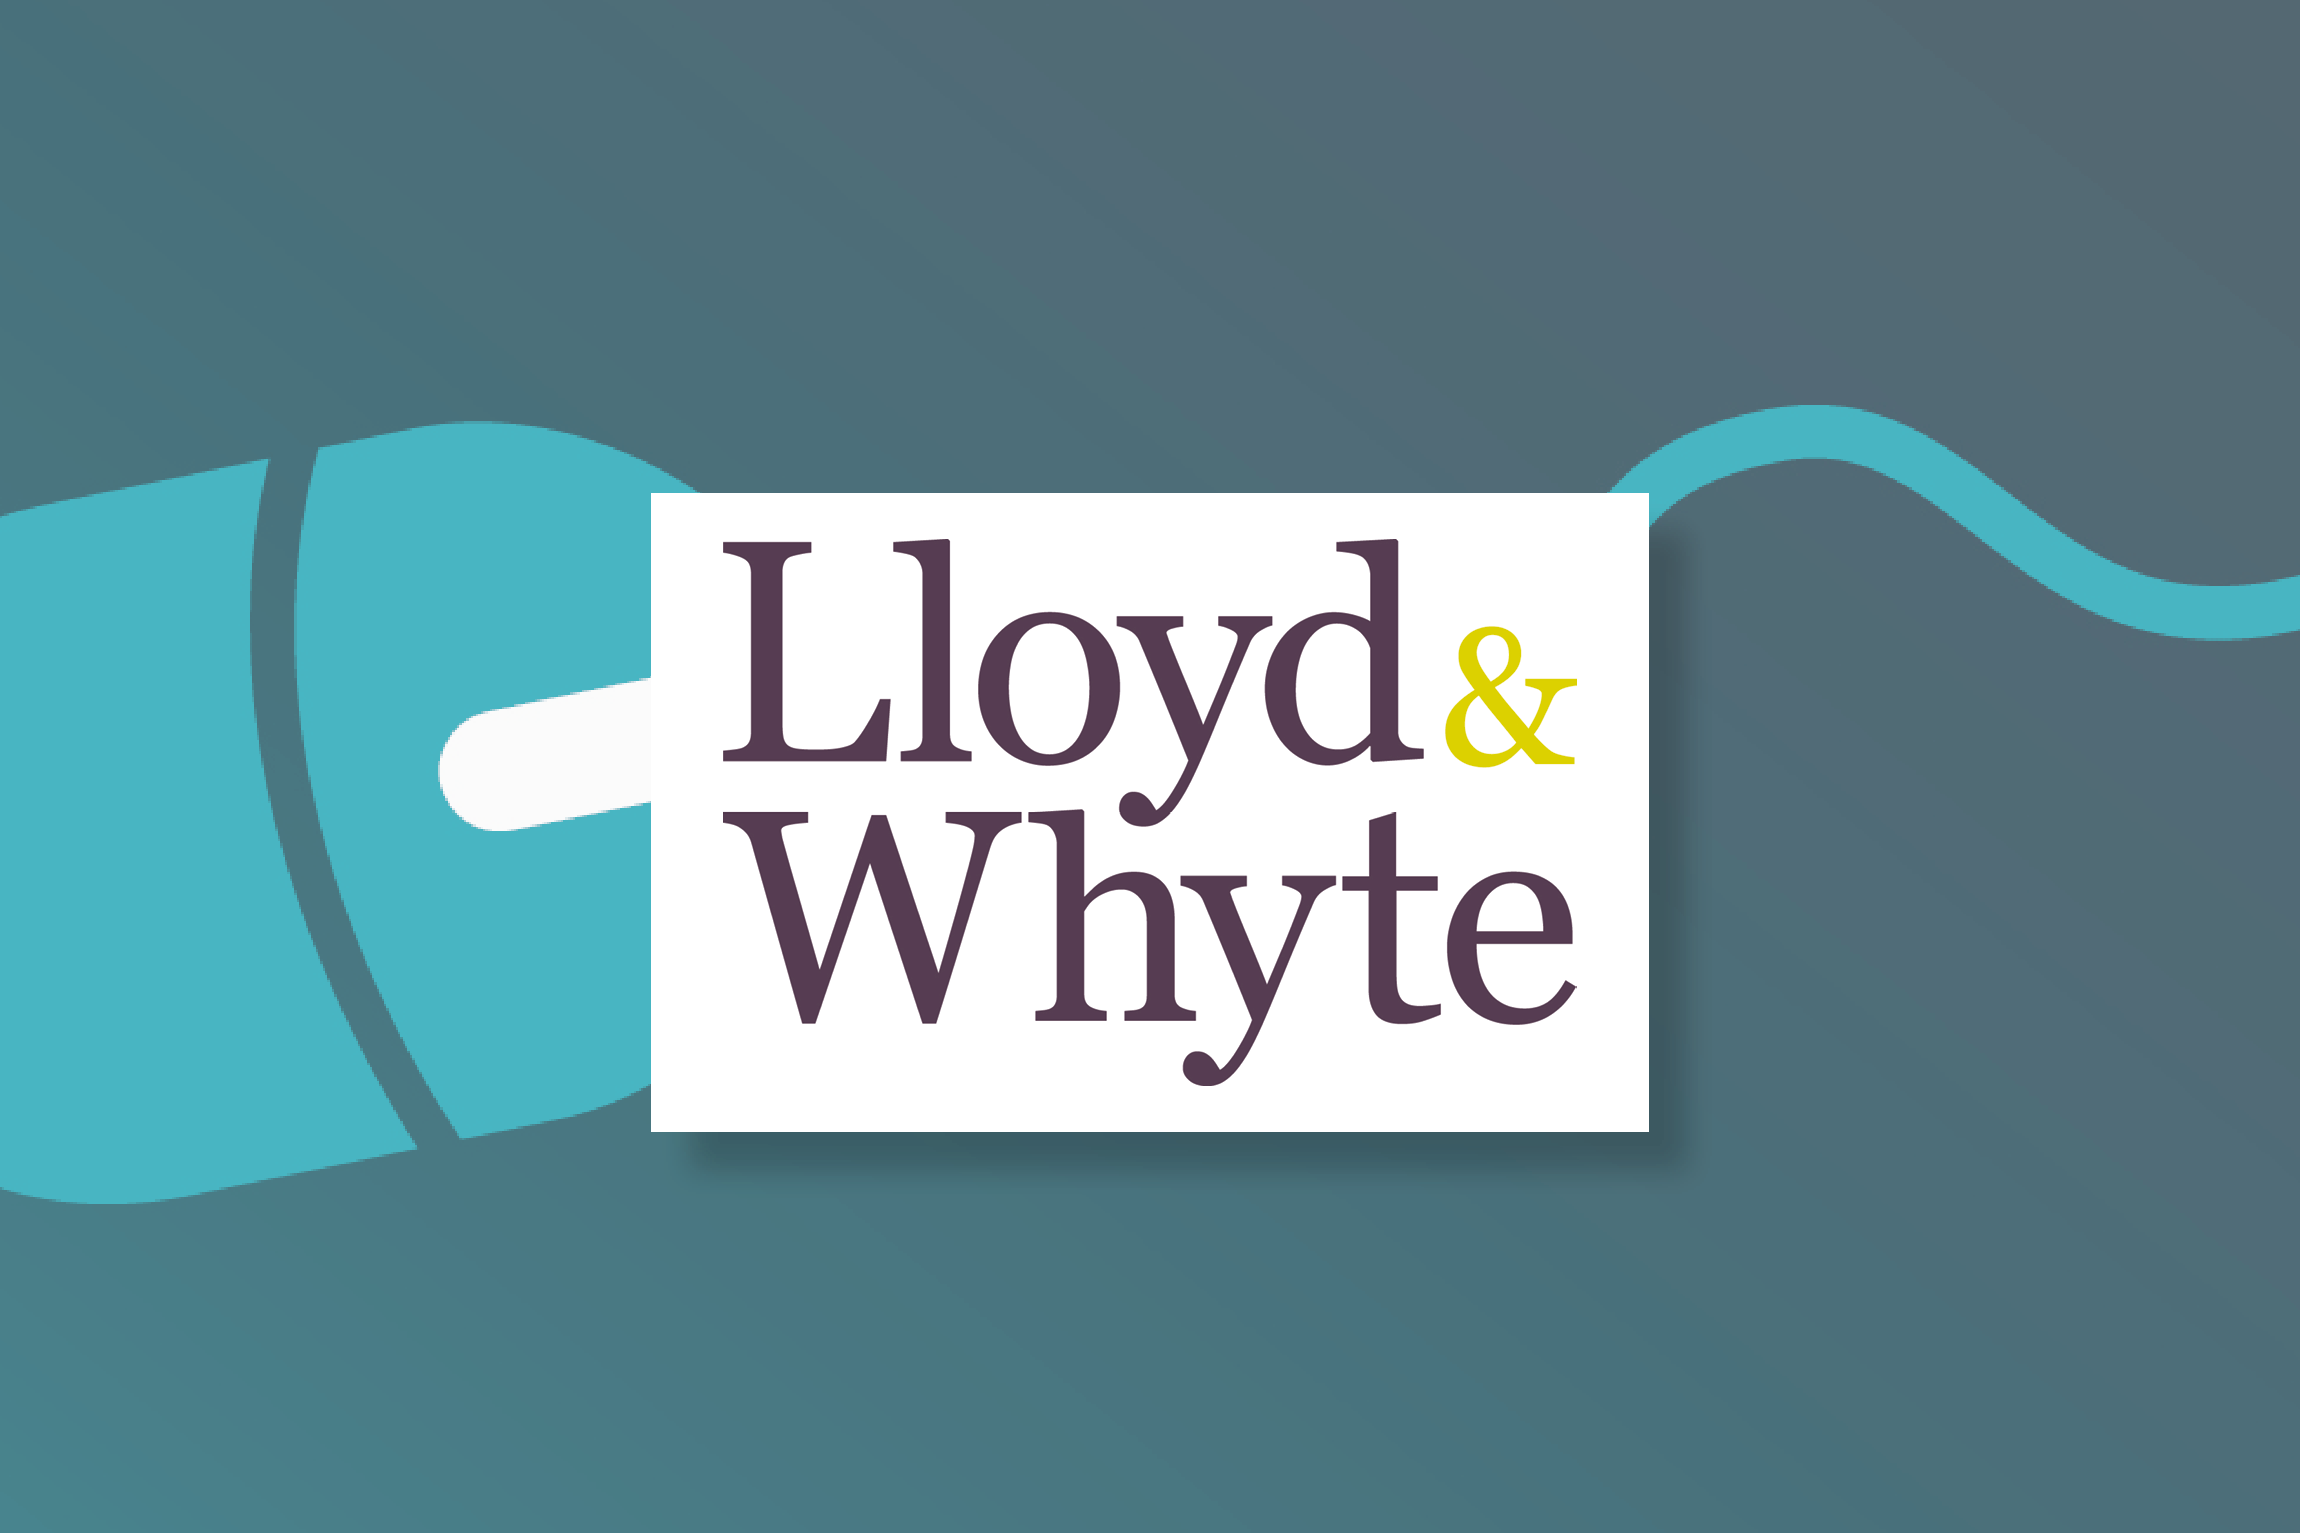 Lloyd and White